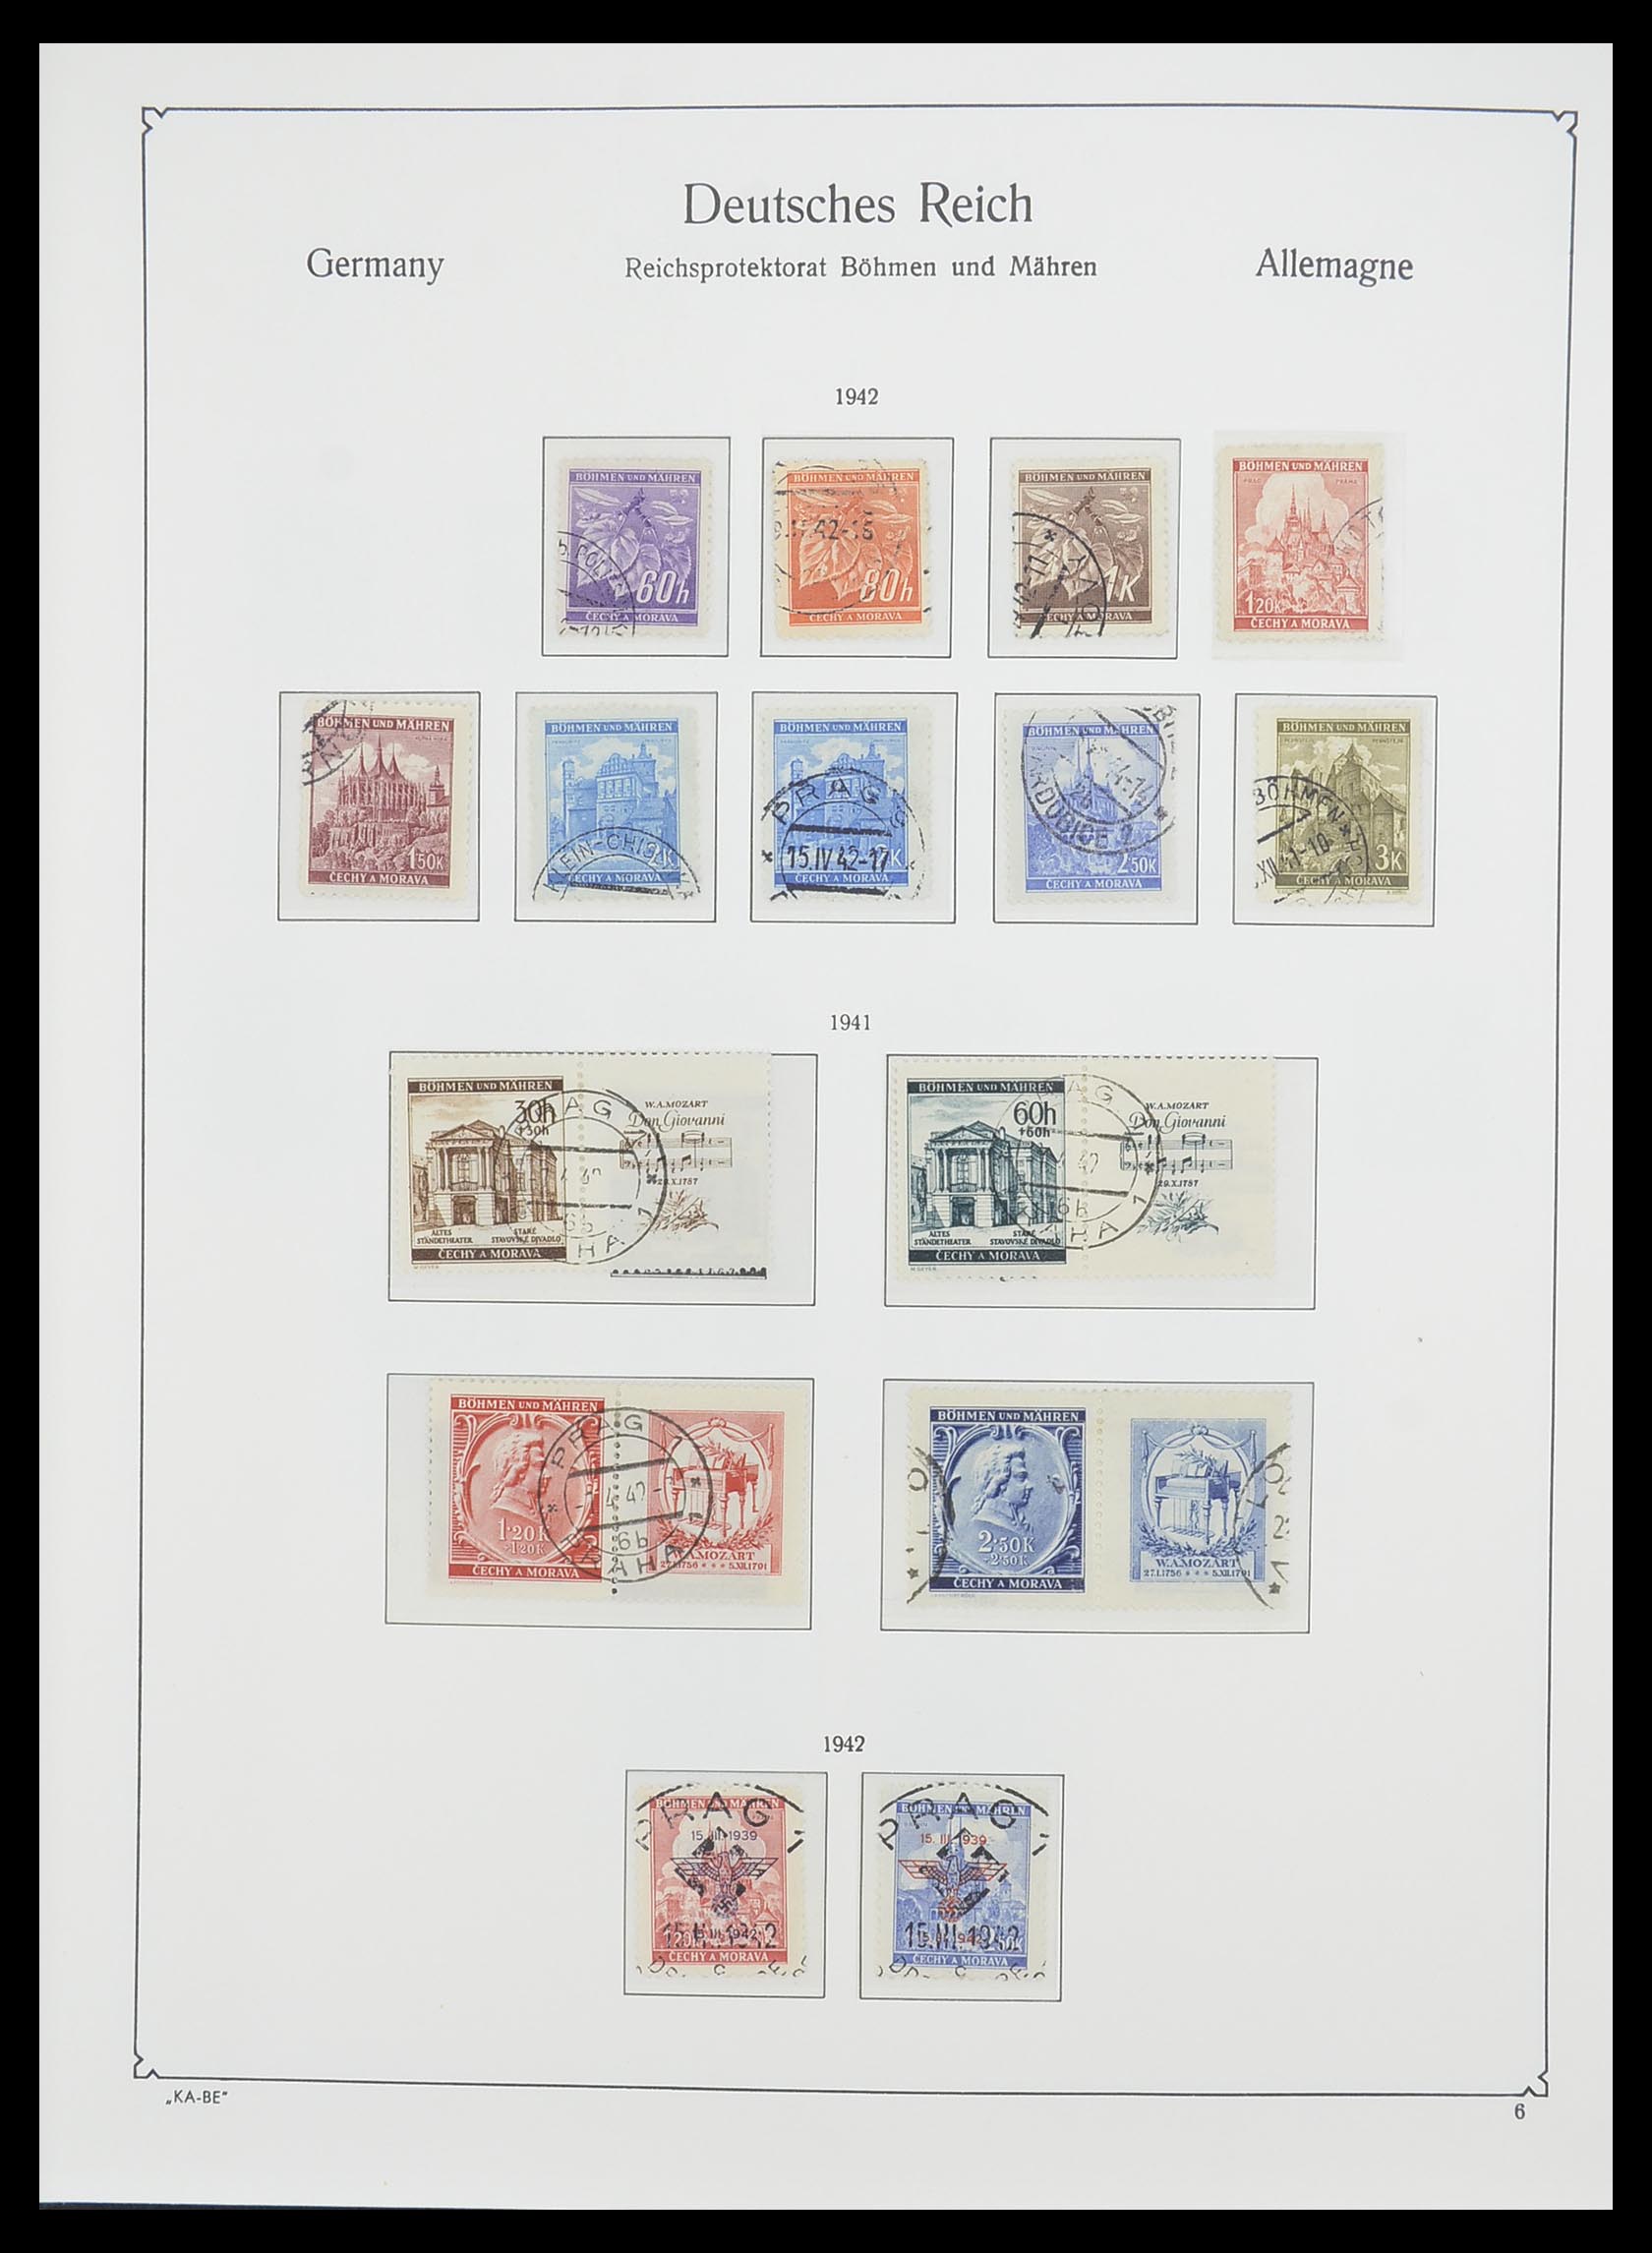 33360 010 - Stamp collection 33360 German occupation 2nd world war 1939-1945.